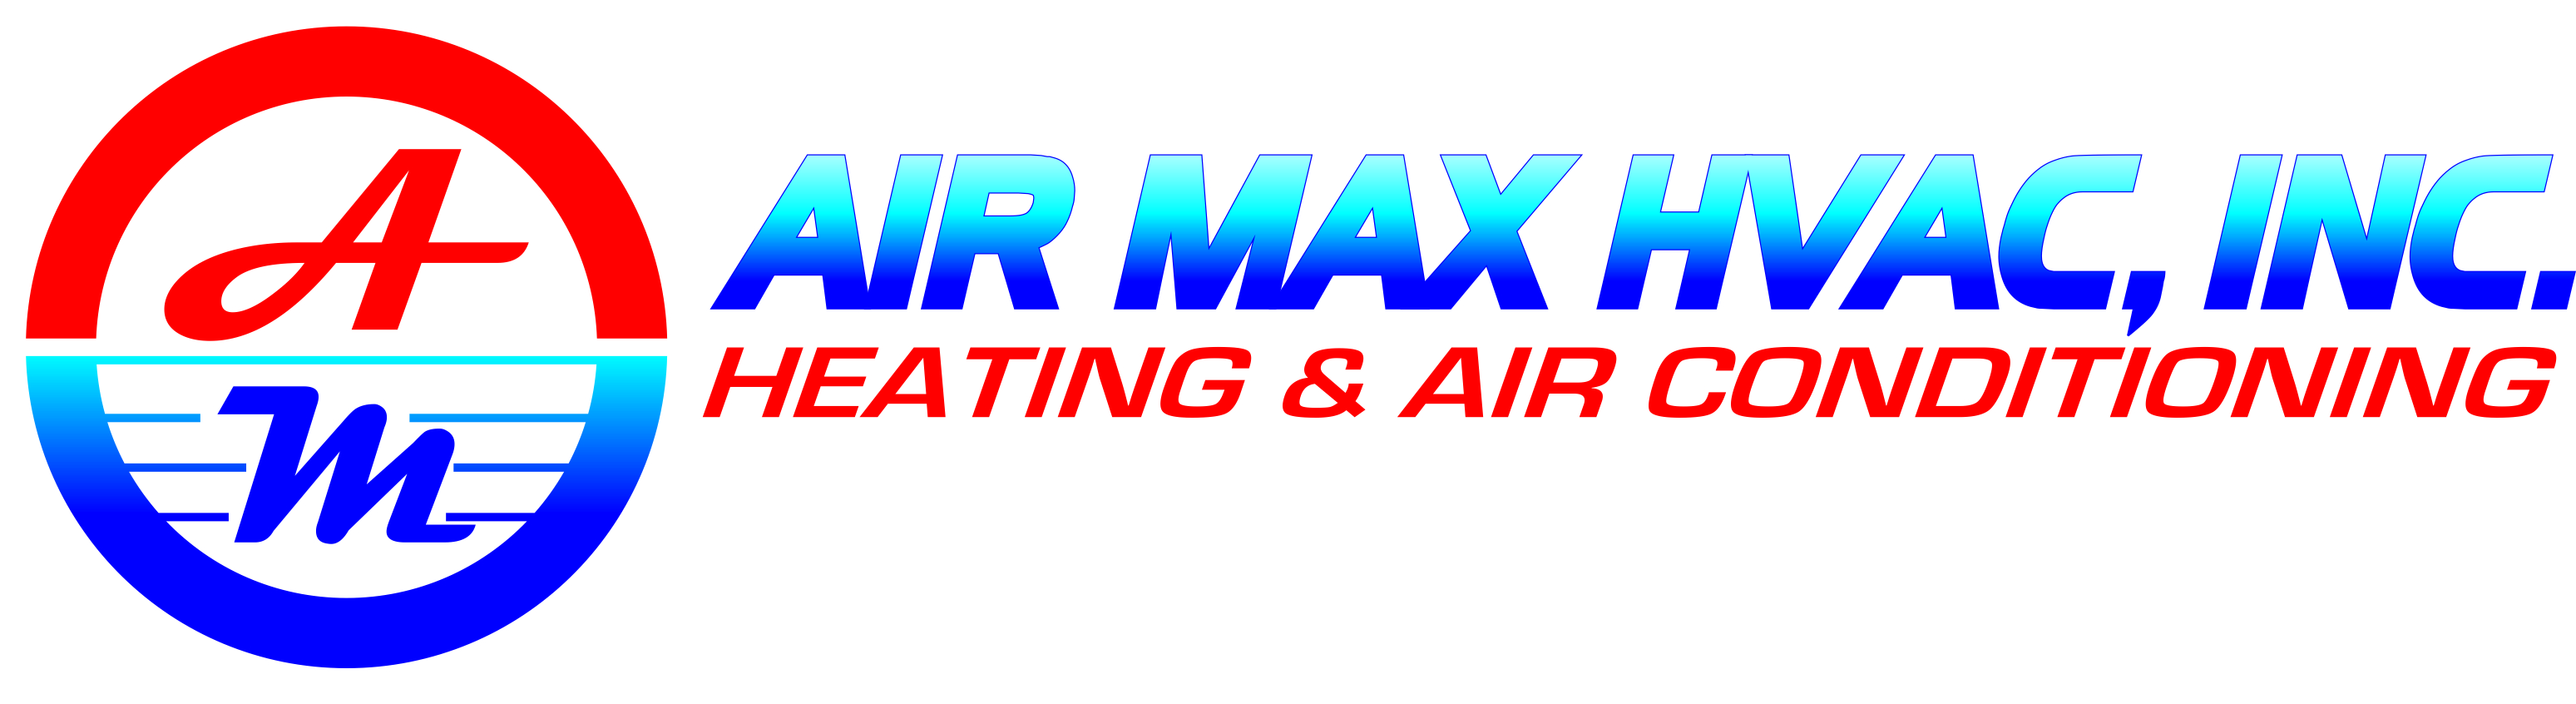 Air Max HVAC Increviews - MISSION HILLS 